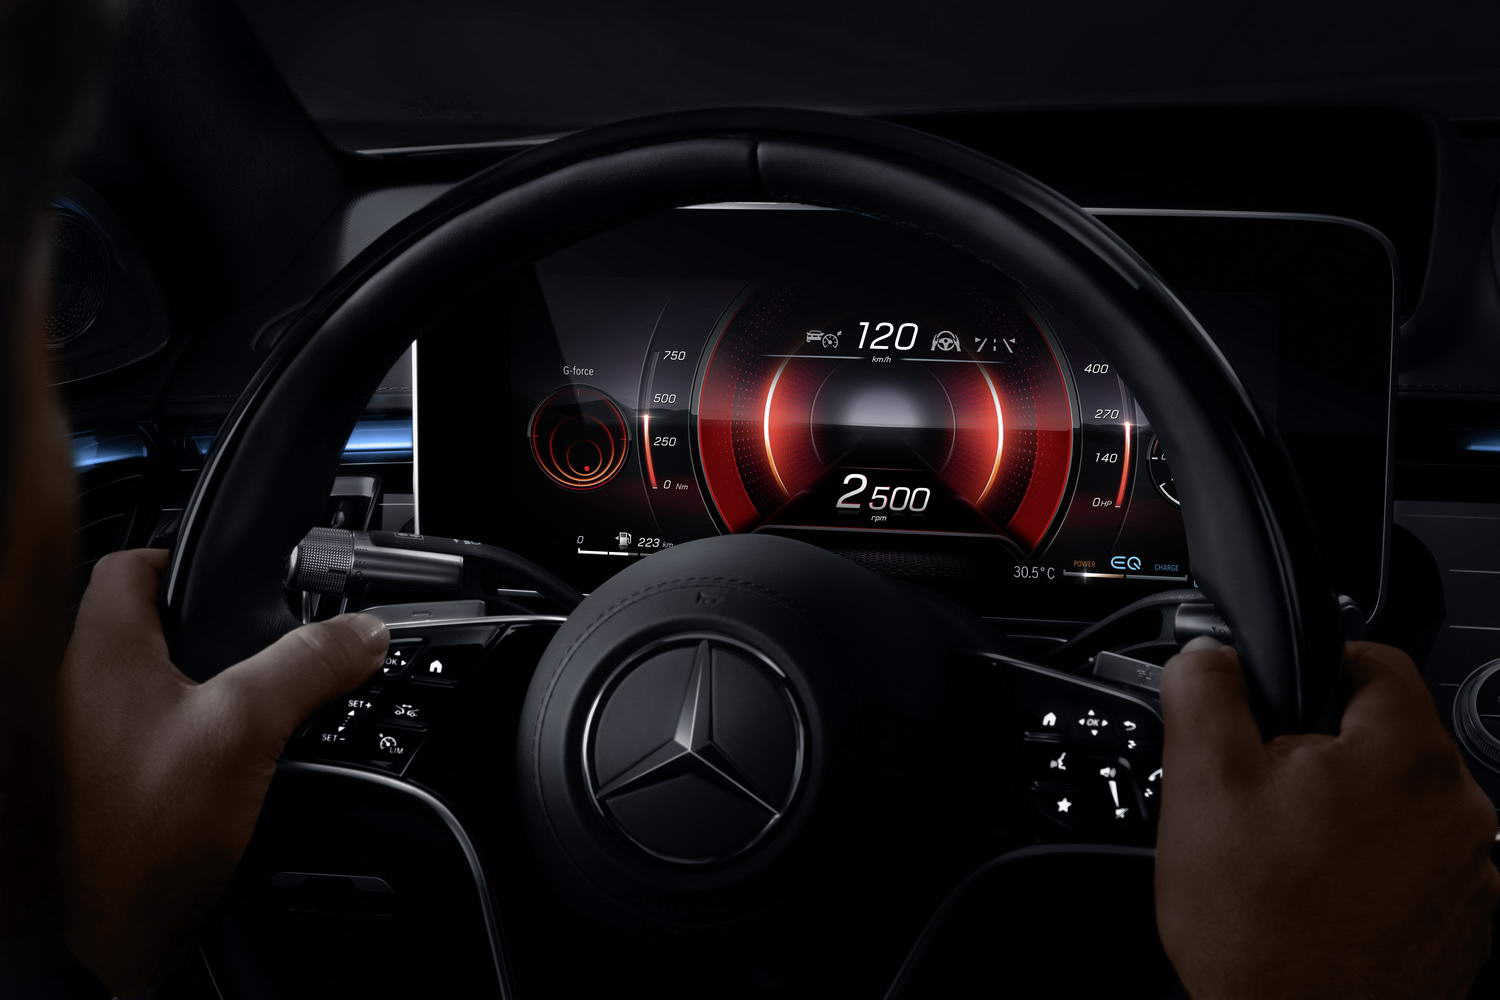 Tech-laden new Mercedes S-Class lands